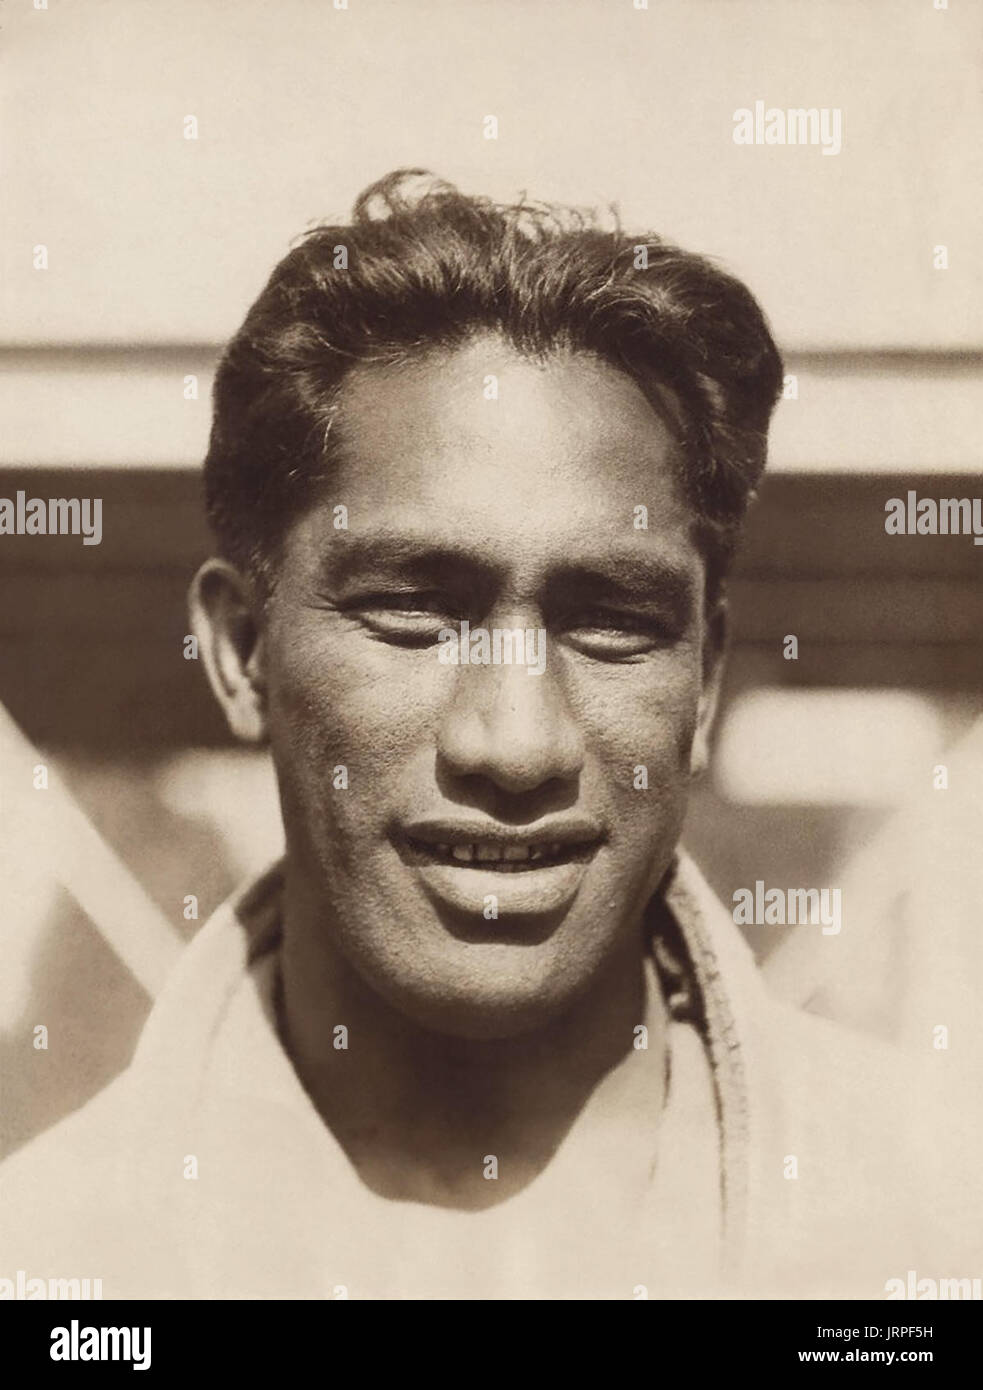 Herzog Paoa Kahanamoku (1890-1968), oft einfach als "The Duke" bezeichnet war eine legendäre native Hawaiian Surfer gilt als Vater des modernen Surfens. Er war auch ein fünffacher Olympiasieger im Schwimmen, die an den Olympischen Spielen 1912, 1920 und 1924 teilgenommen, als auch eine Alternative für die US-Wasserball-Nationalmannschaft bei den Olympischen Spielen 1932. Kahanamoku ist in Swimming Hall Of Fame, die Surfen Hall Of Fame und der U.S. Olympic Hall Of Fame aufgenommen. (Hier abgebildet c1924) Stockfoto